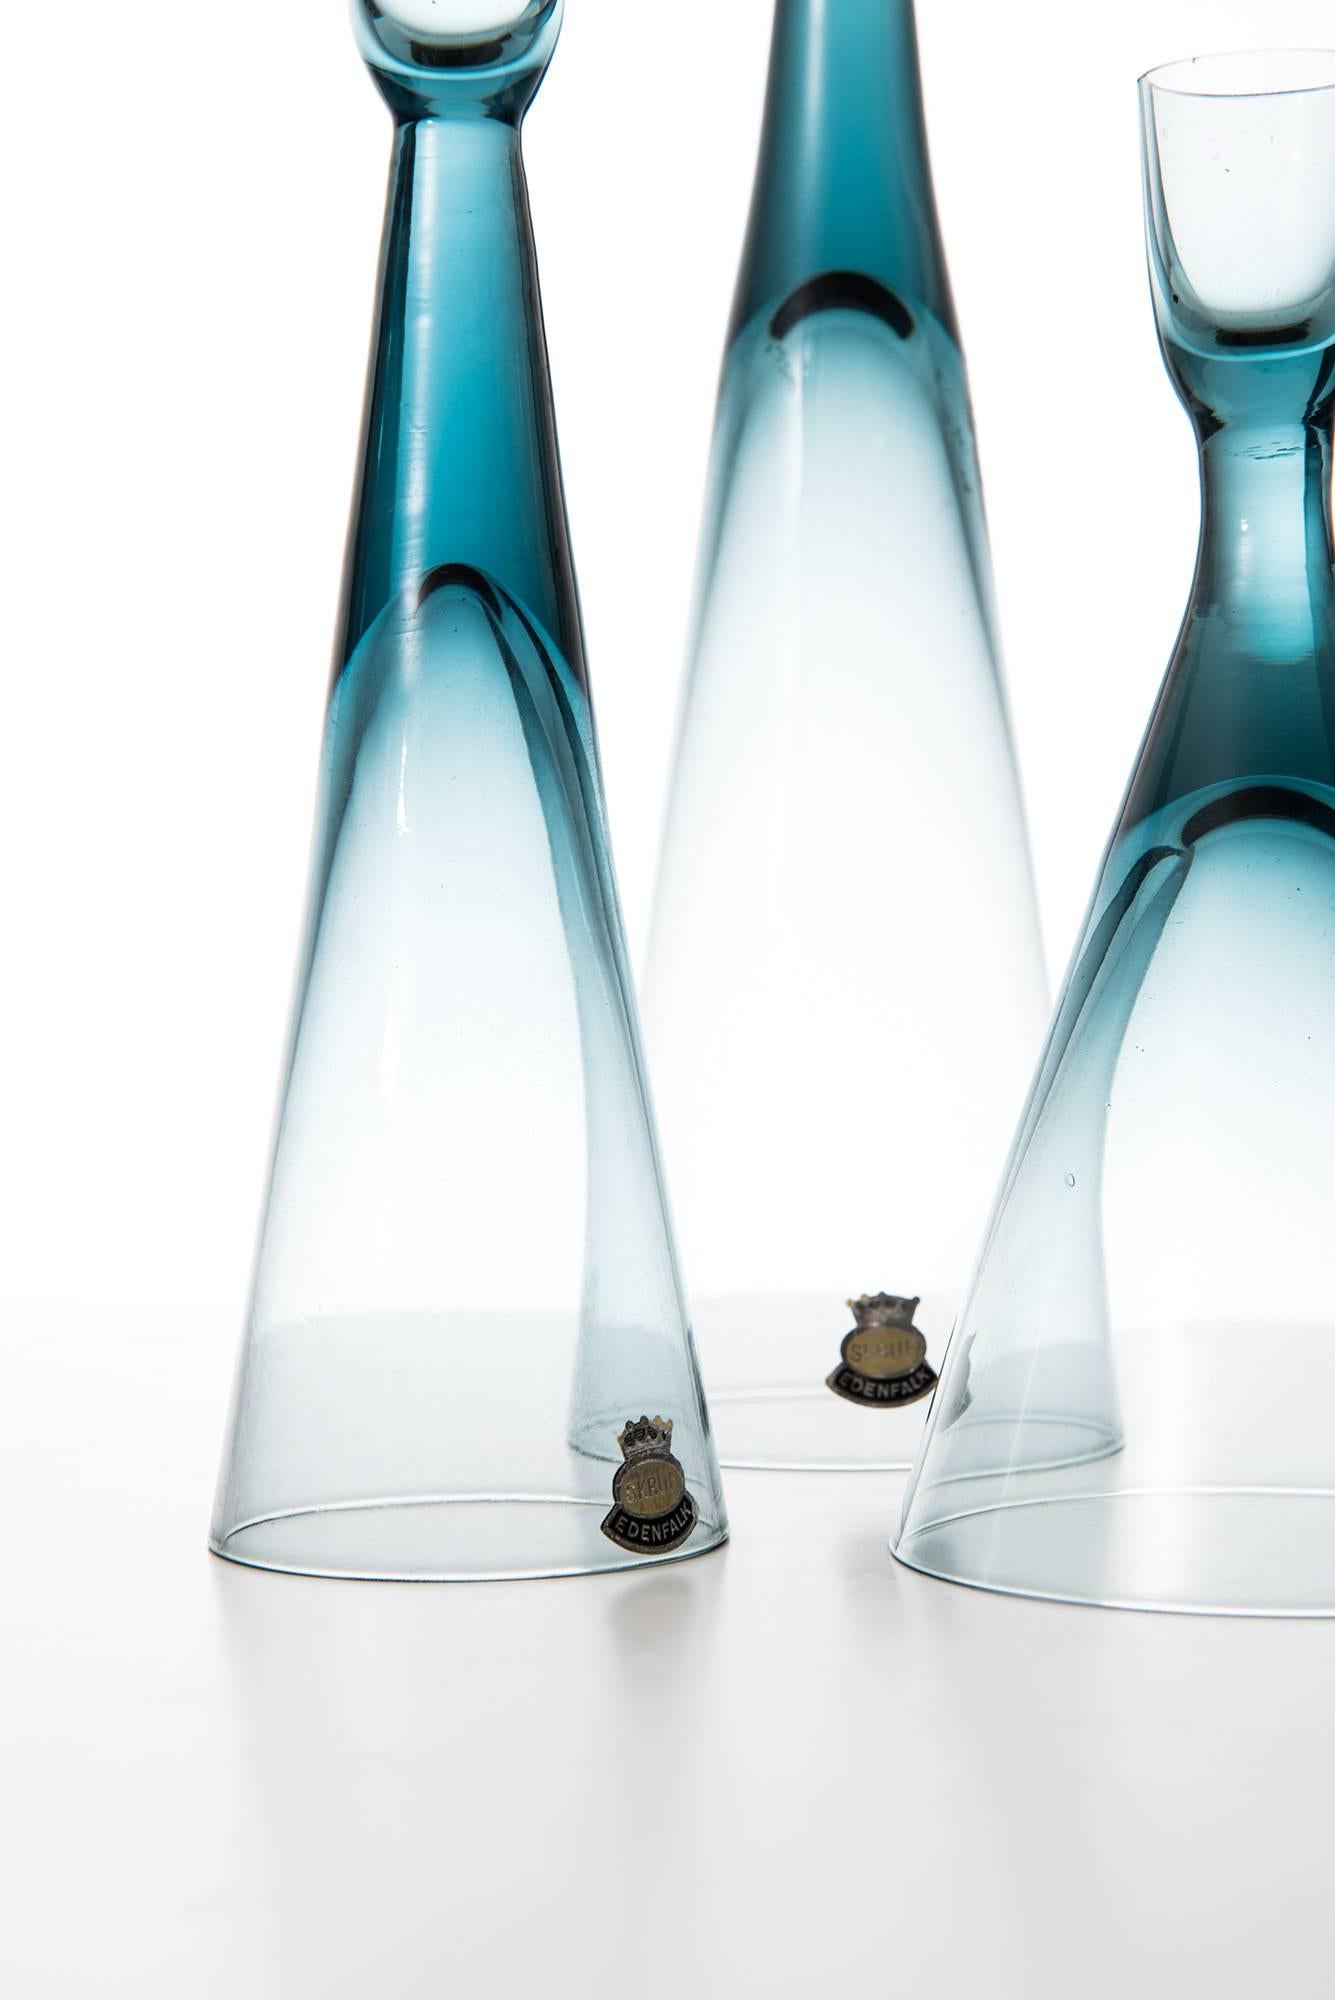 Set of 3 candlesticks in glass designed by Bengt Edenfalk. Produced by Skruf glasbruk in Sweden.